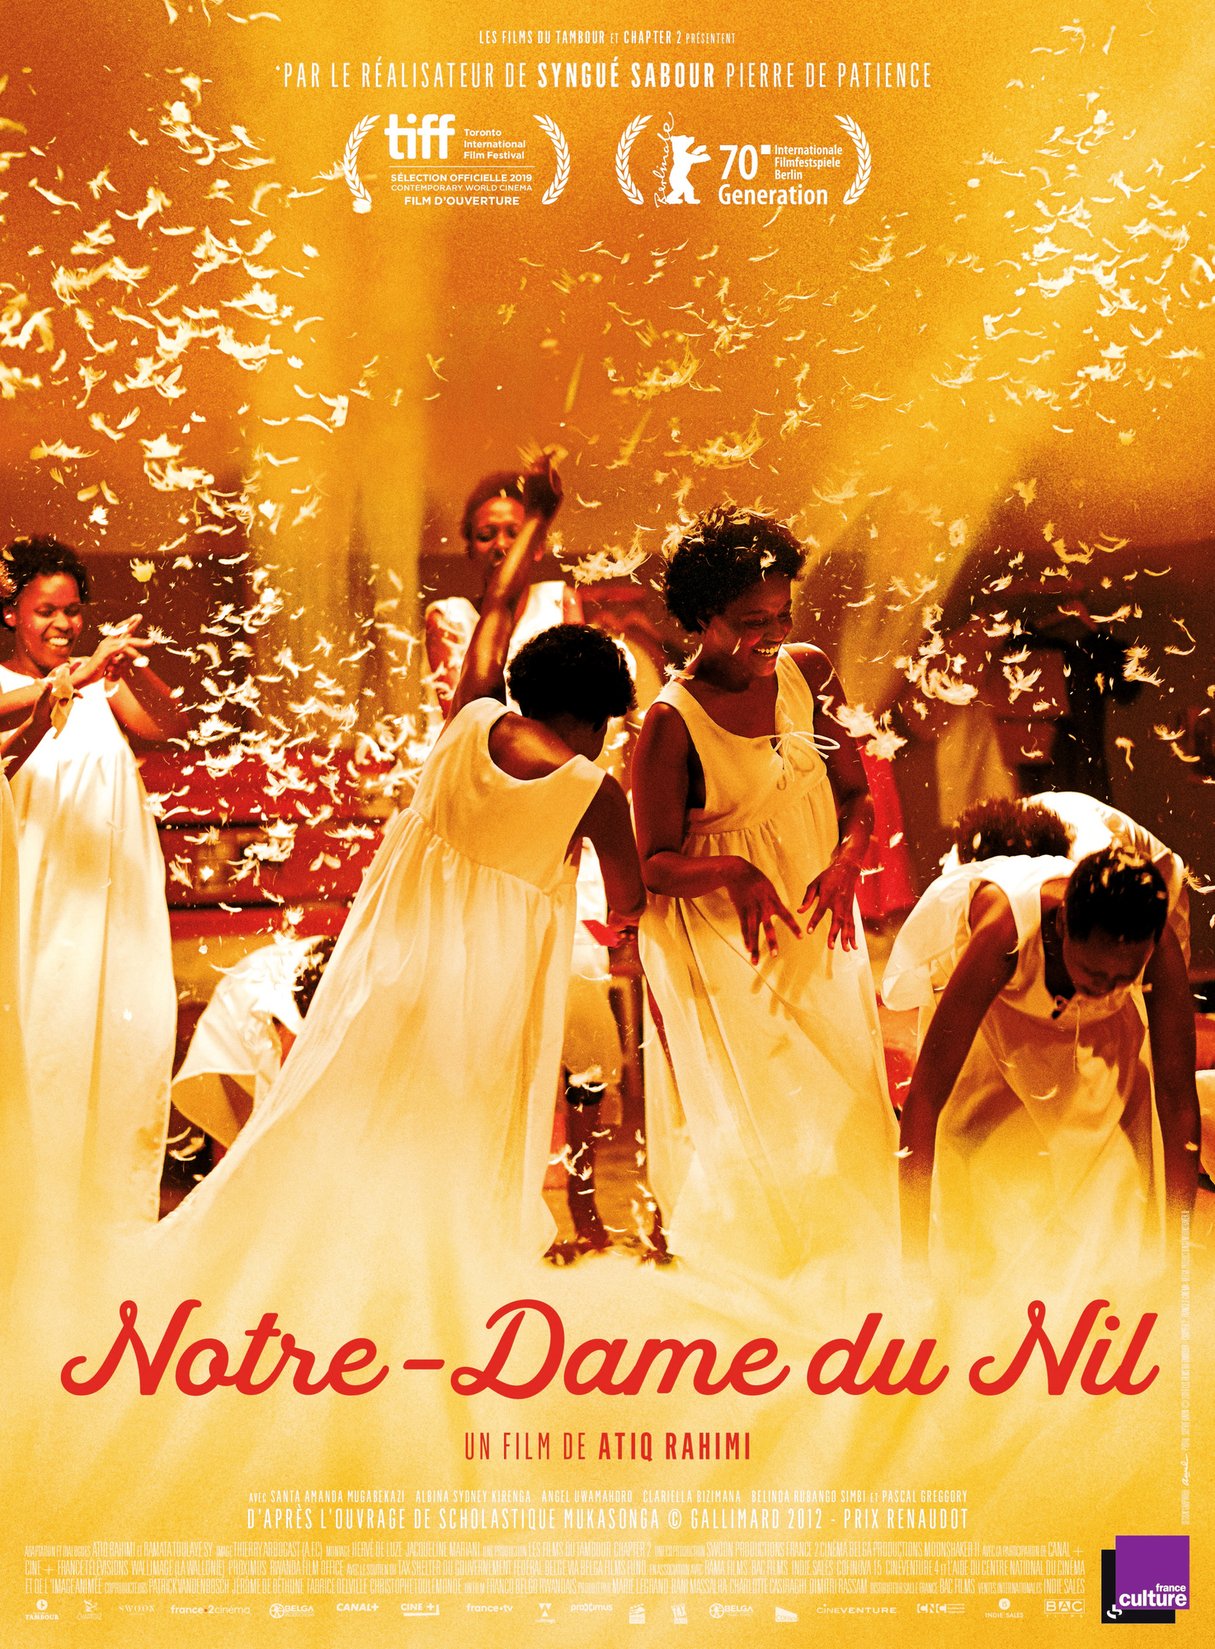 Notre-Dame du Nil, d’Atiq Rahimi (sortie en France le 5 février)